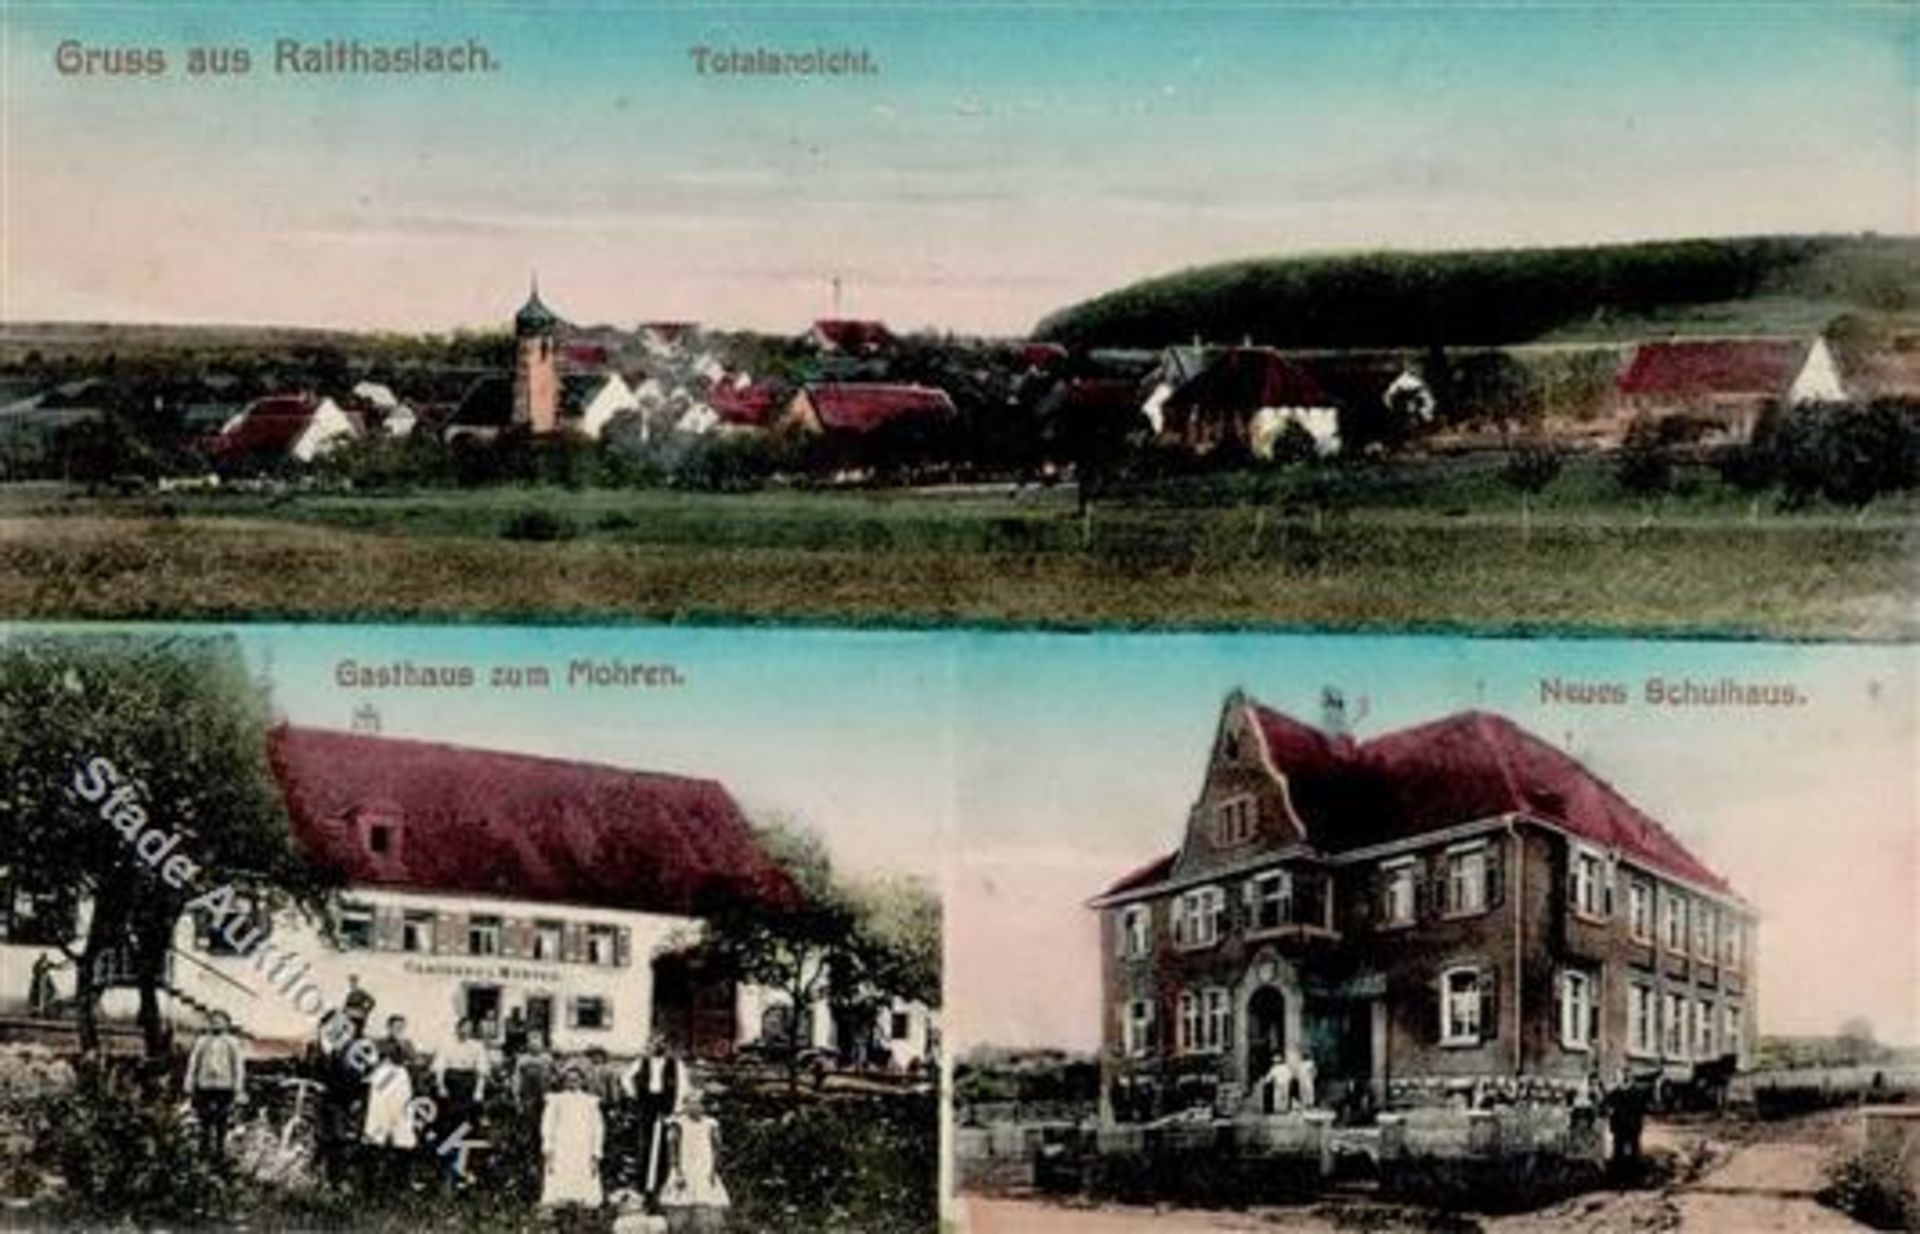 Raithaslach (7768) Gasthaus zum Mohren 1915 II (Stauchung)Dieses Los wird in einer online-Auktion